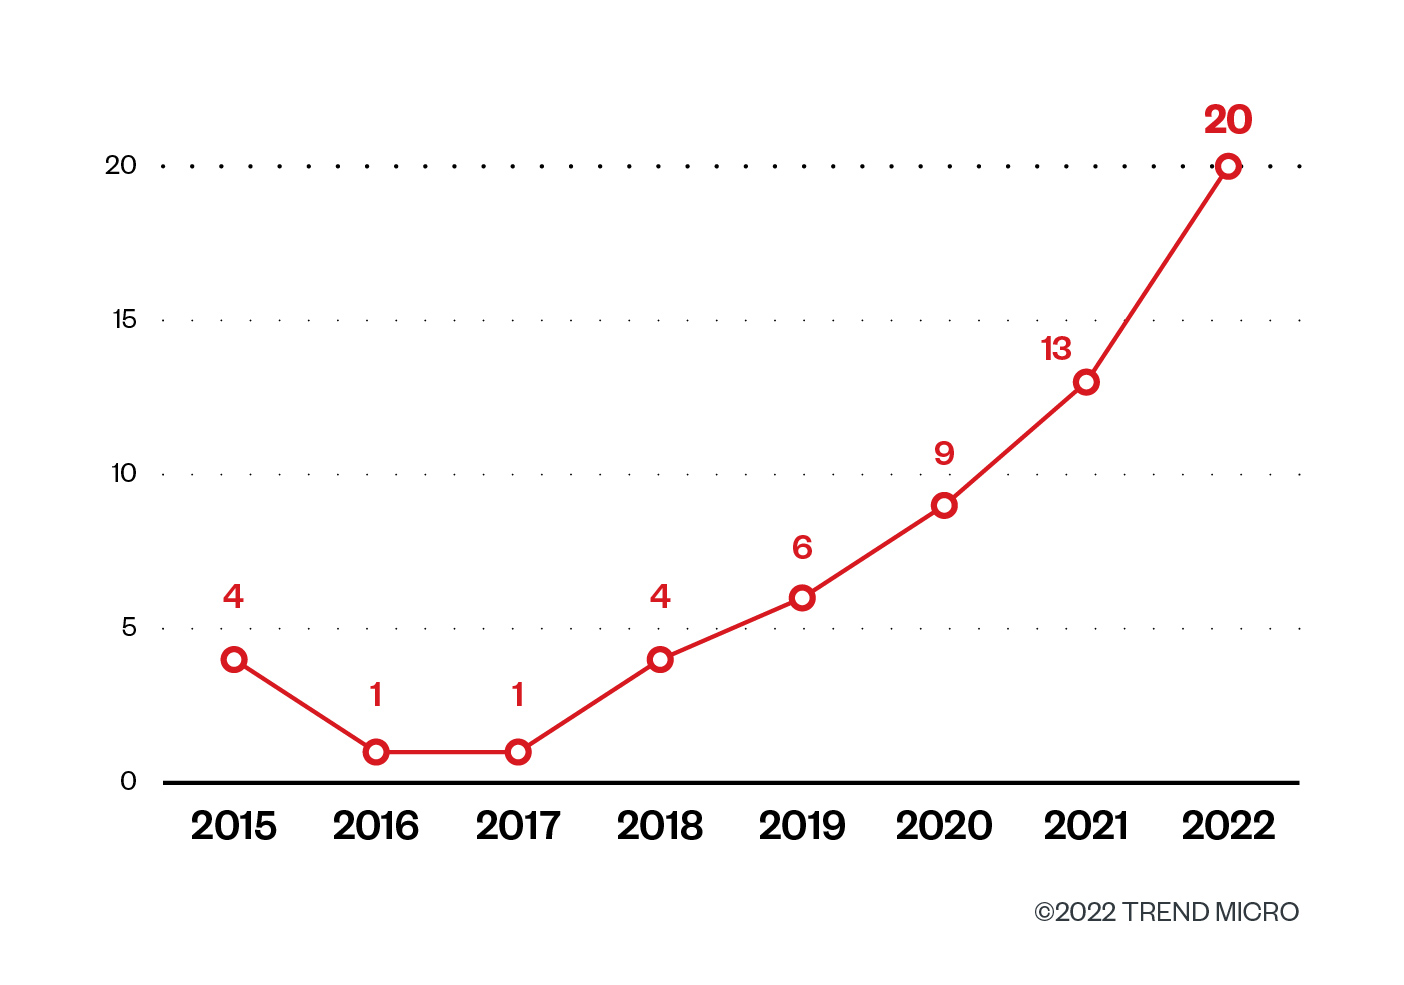 Bild 1. Die Zahl der öffentlichen Reports zu Kernel-Bedrohungen von April 2015 bis Oktober 2022